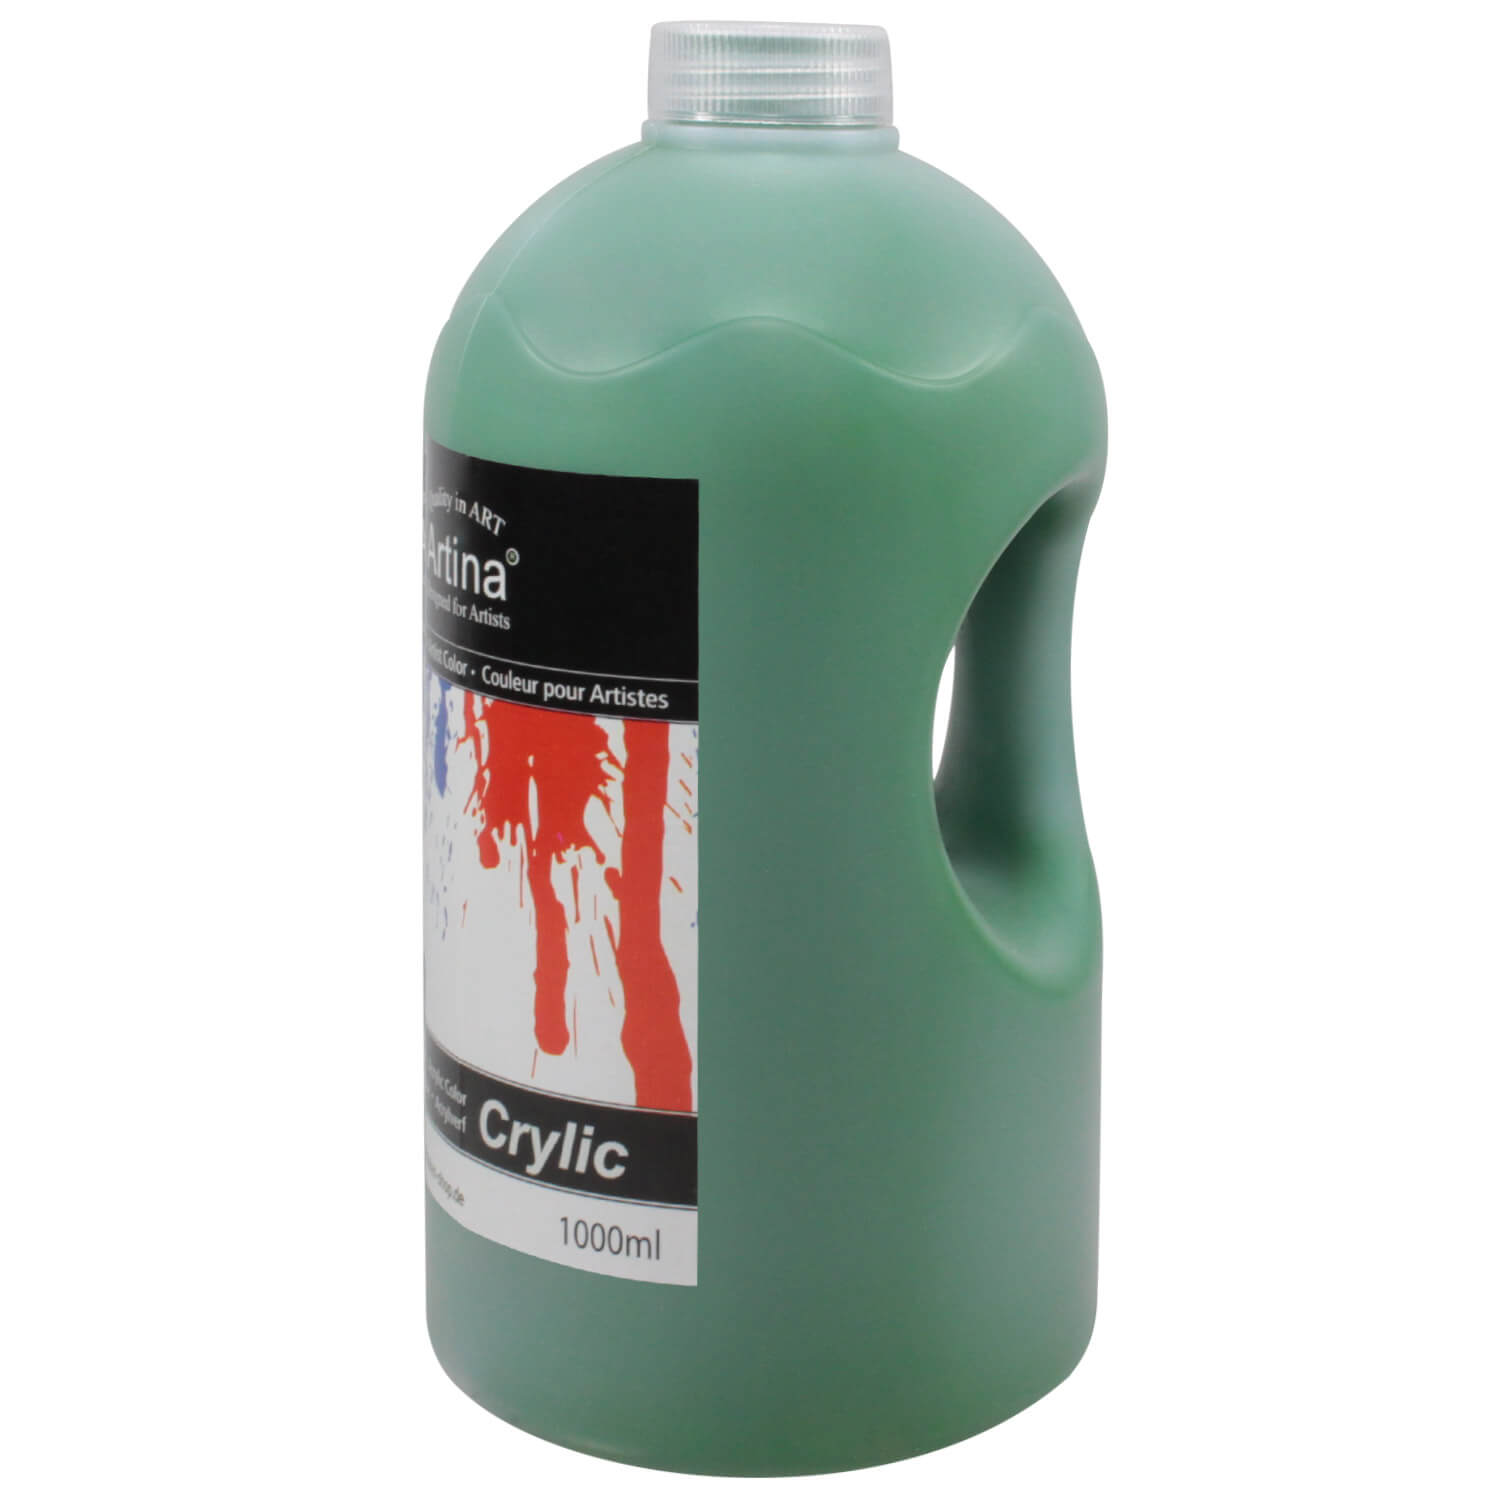 Artina Acrylfarbe Crylic 1000ml, Saftgrün für Acrylmalerei